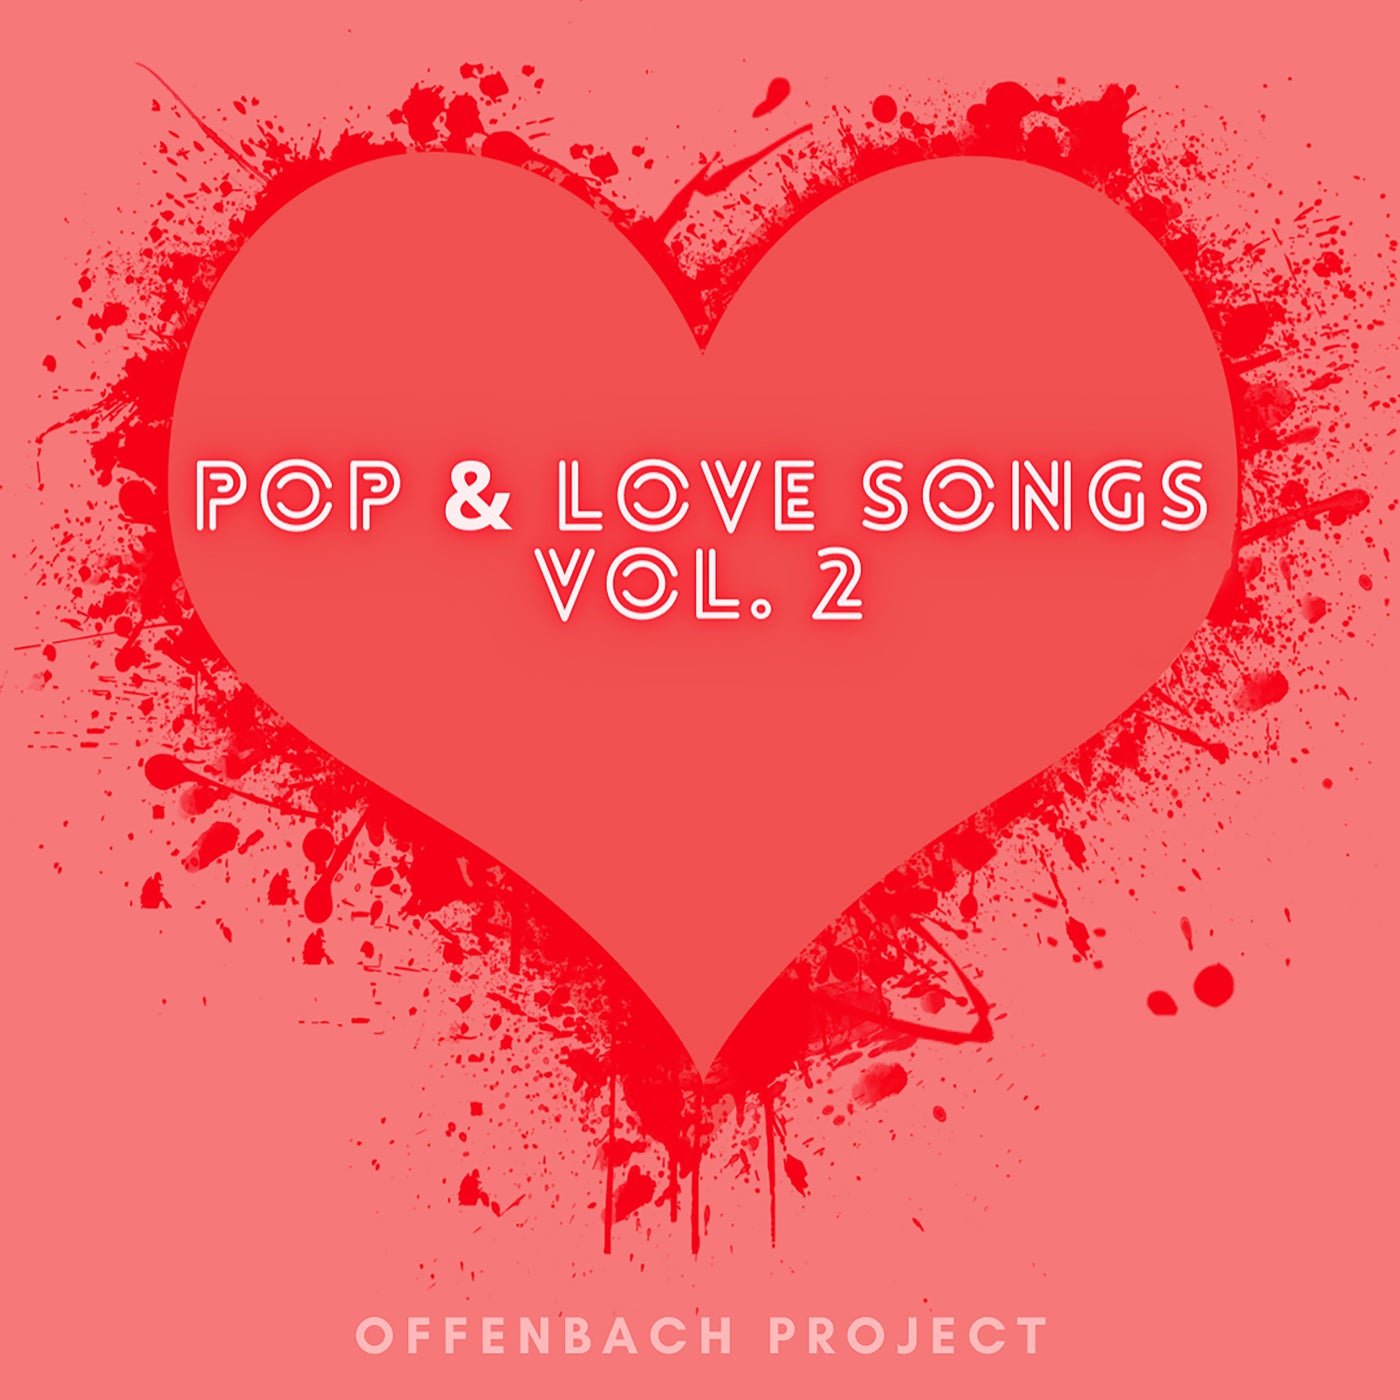 Pop & Love Songs Vol. 2